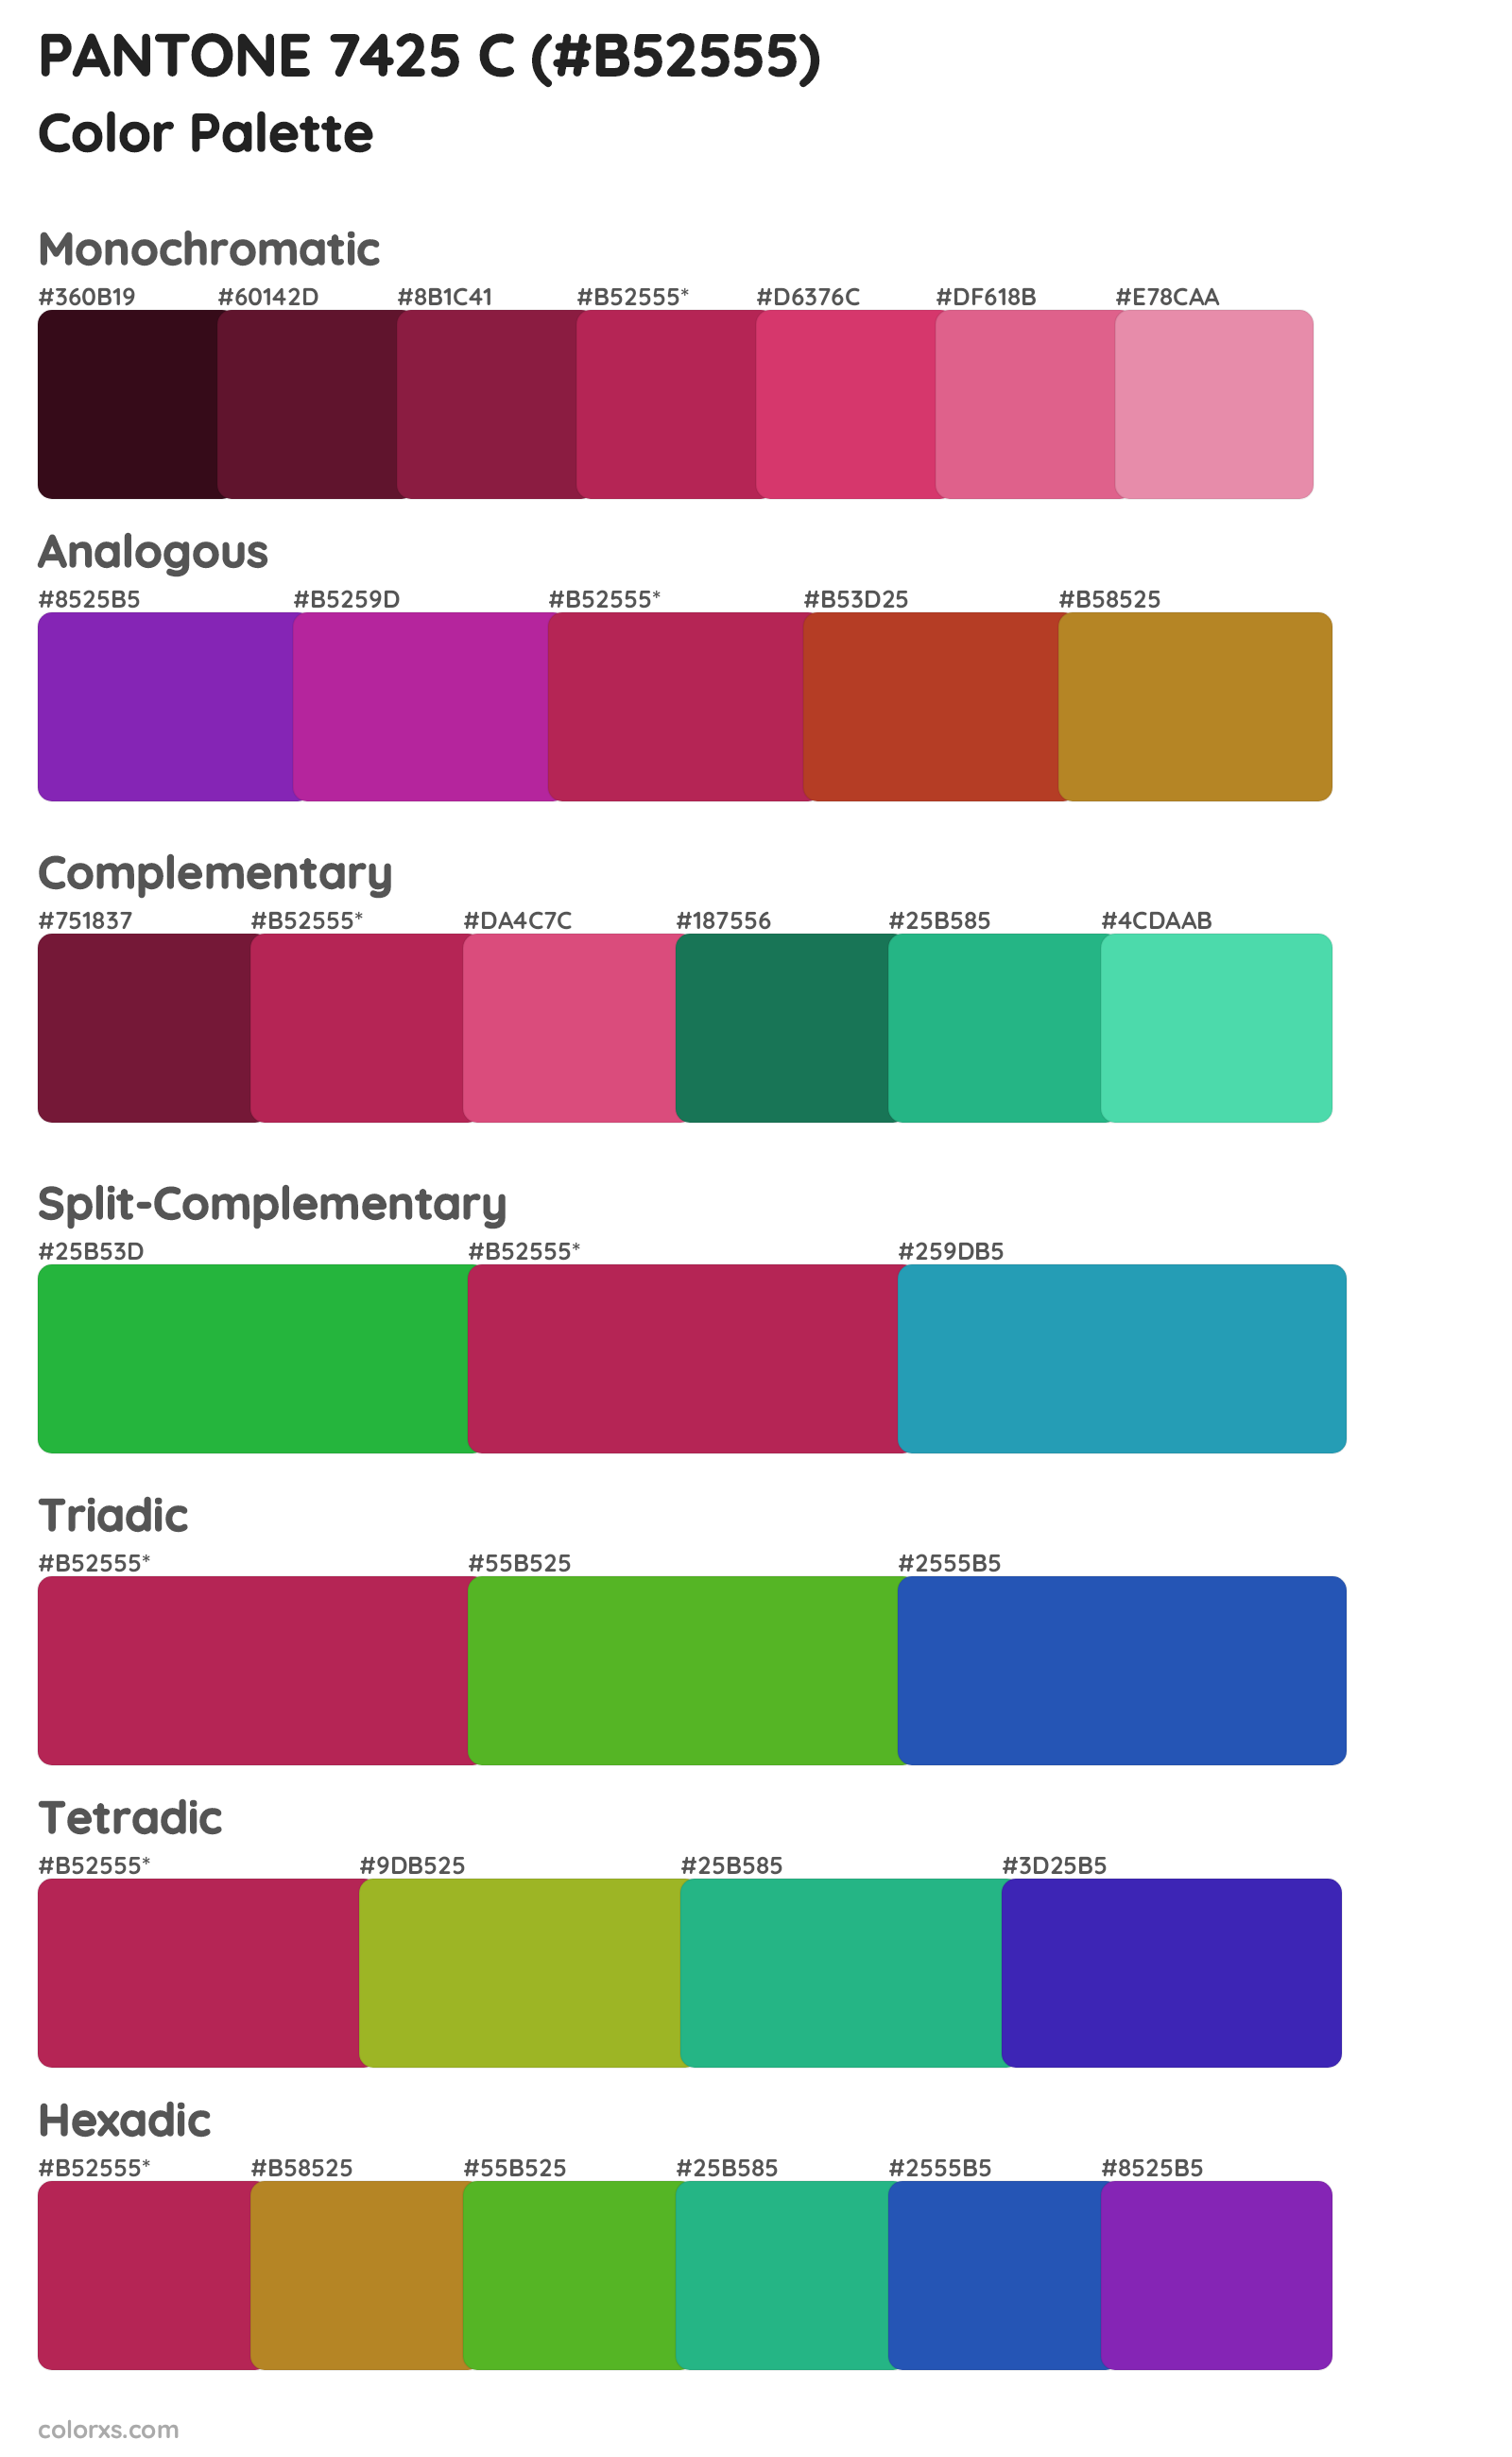 PANTONE 7425 C Color Scheme Palettes